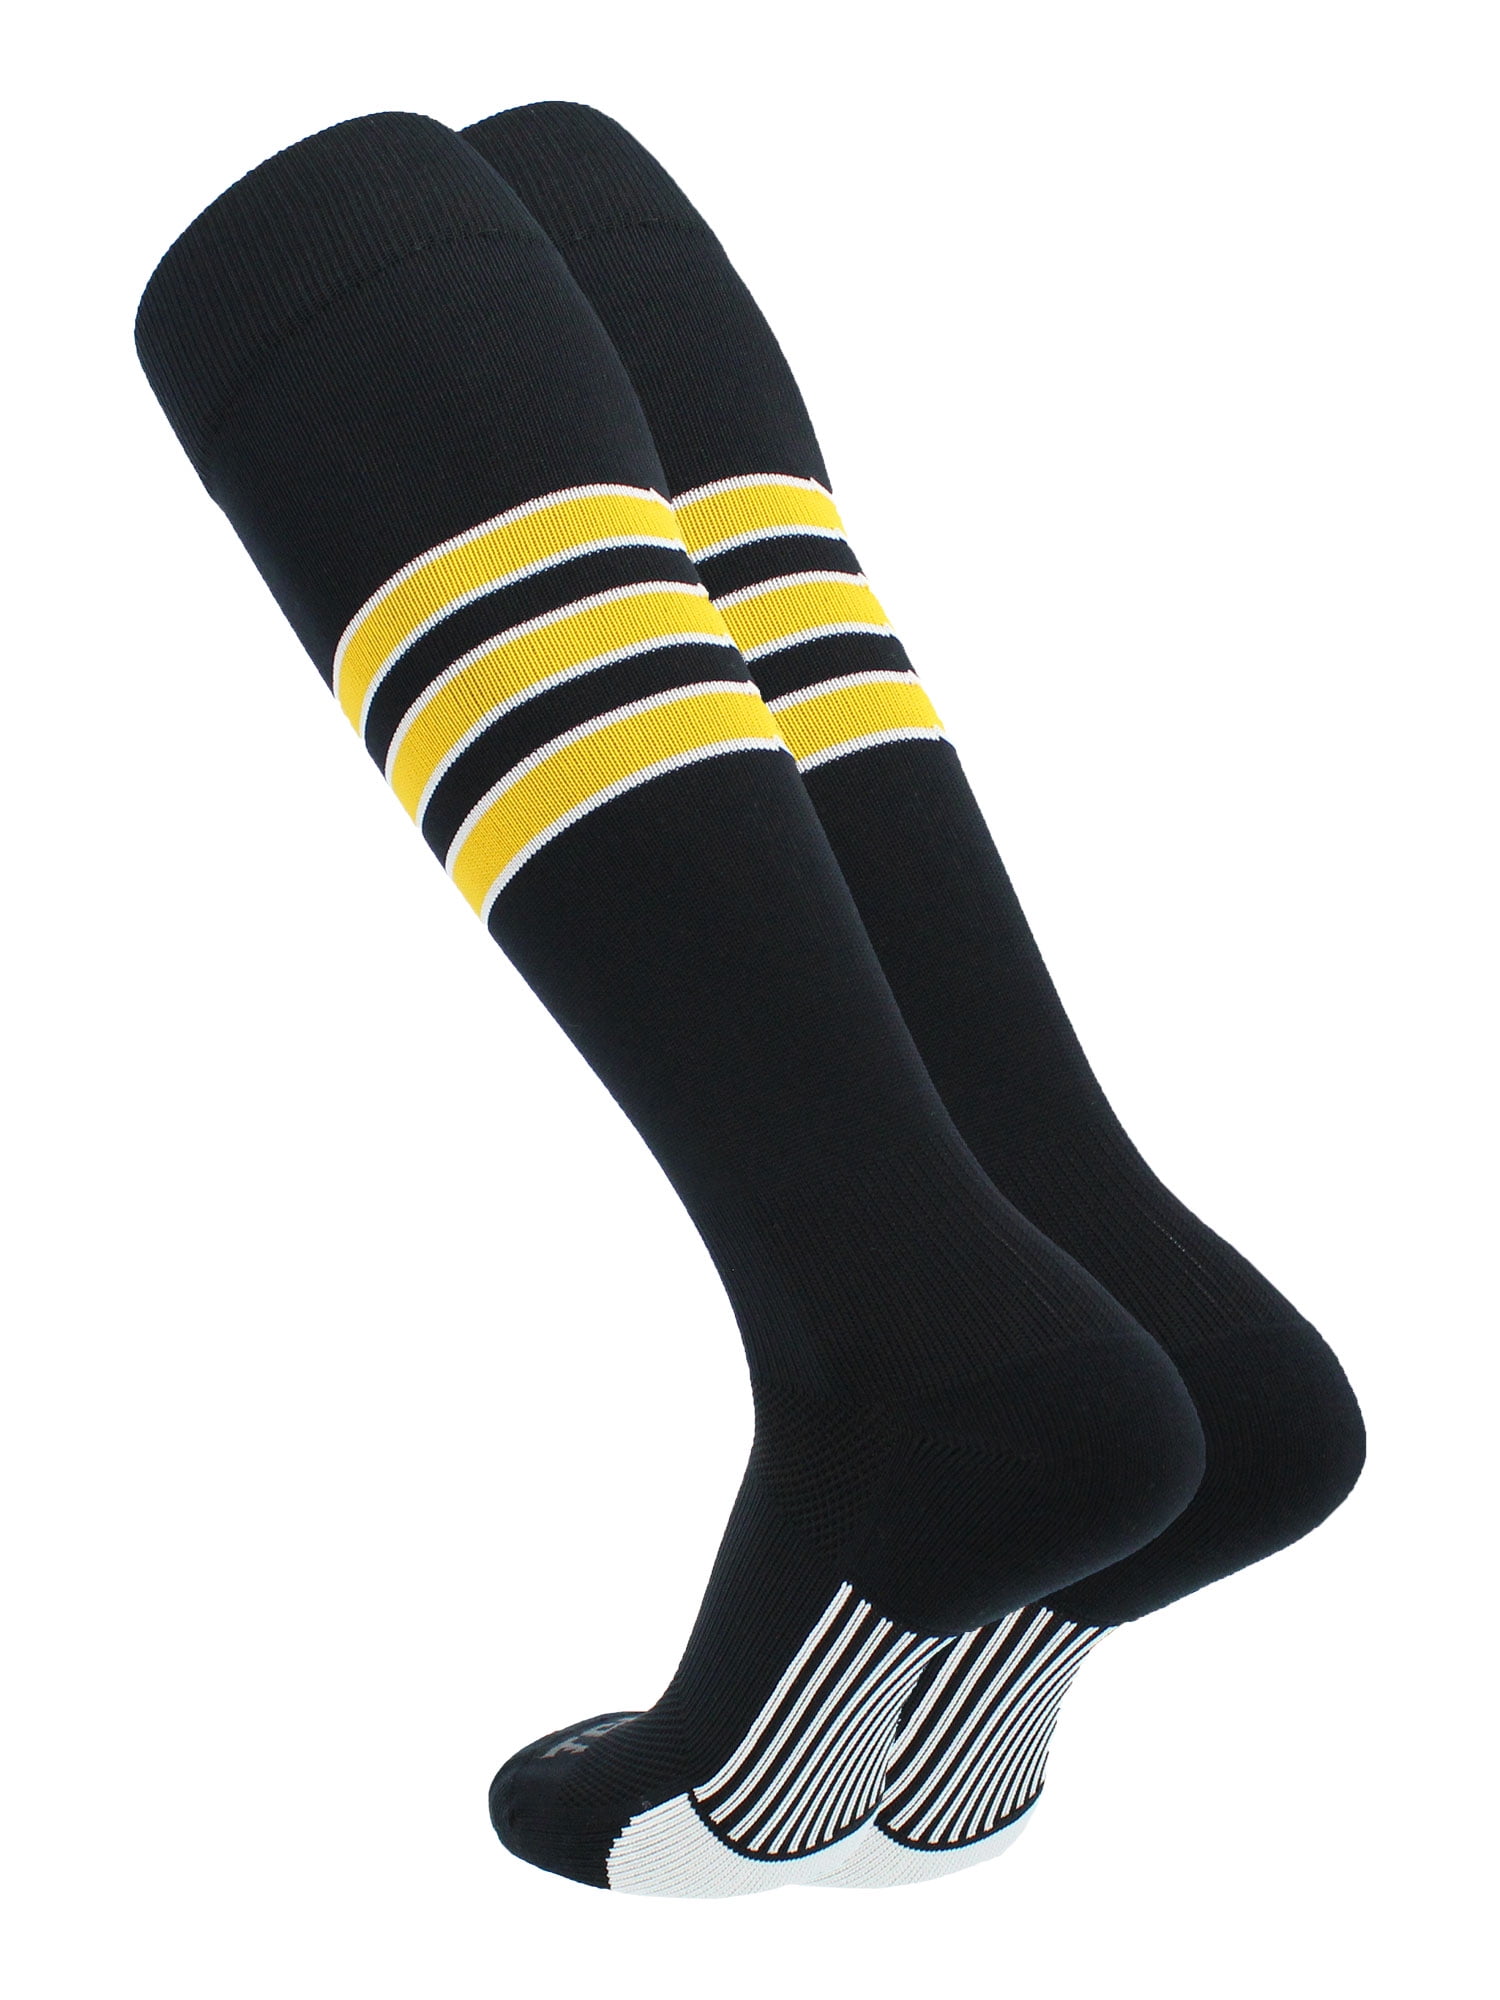 TCK Performance Baseball/Softball Socks (Black/White/Gold, Medium ...